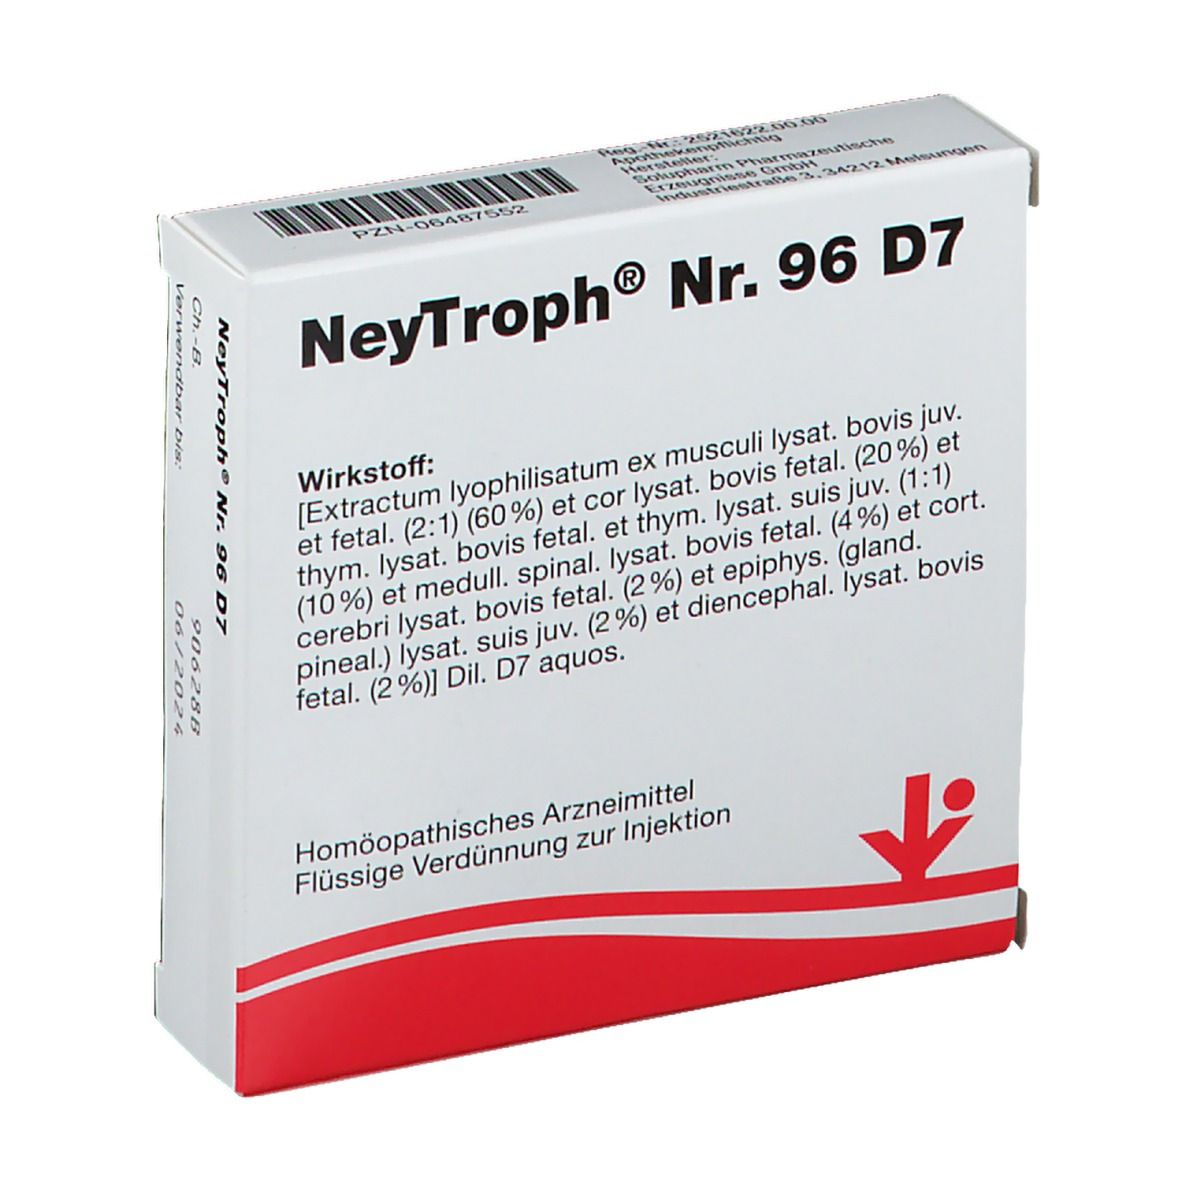 NeyTroph® Nr. 96 D7